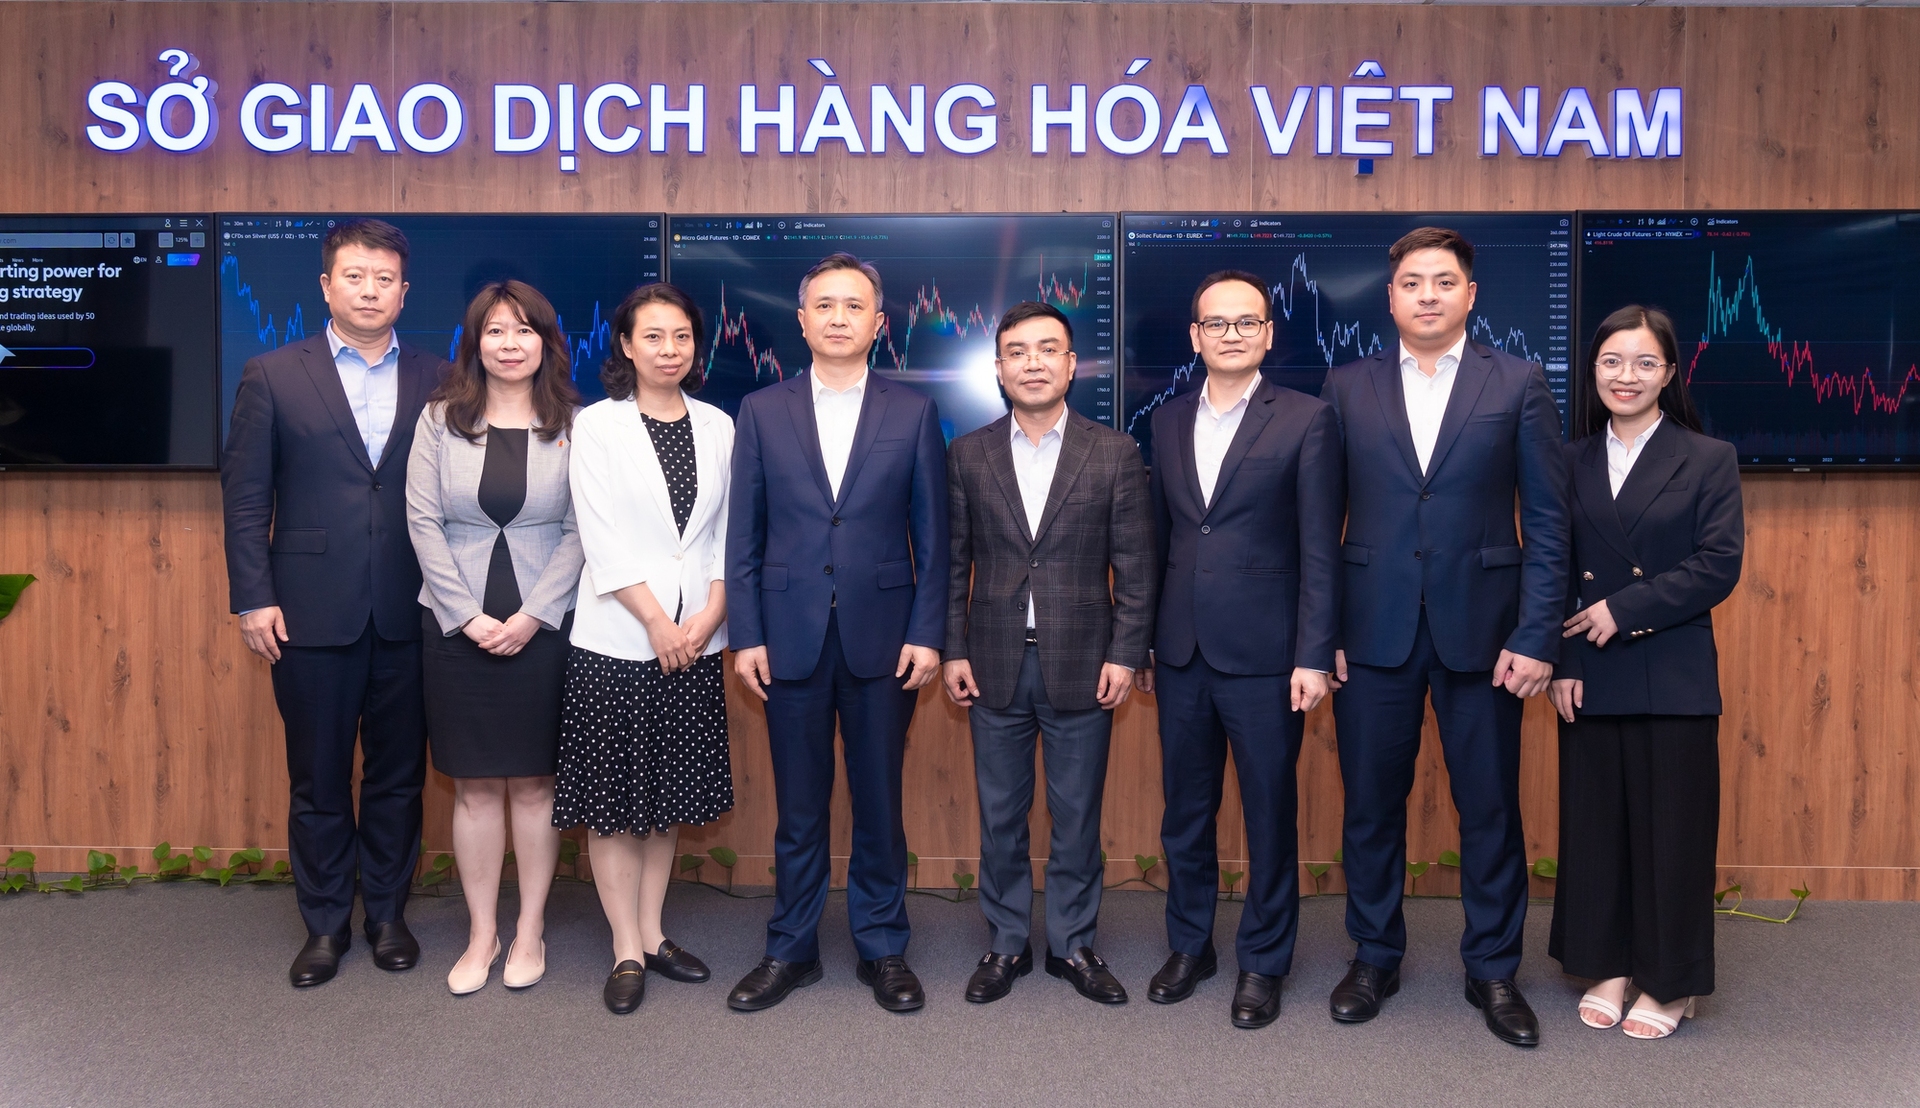 Sở Giao dịch hàng hóa Đại Liên làm việc tại trụ sở của Sở Giao dịch hàng hóa Việt Nam (Ảnh: VGP)